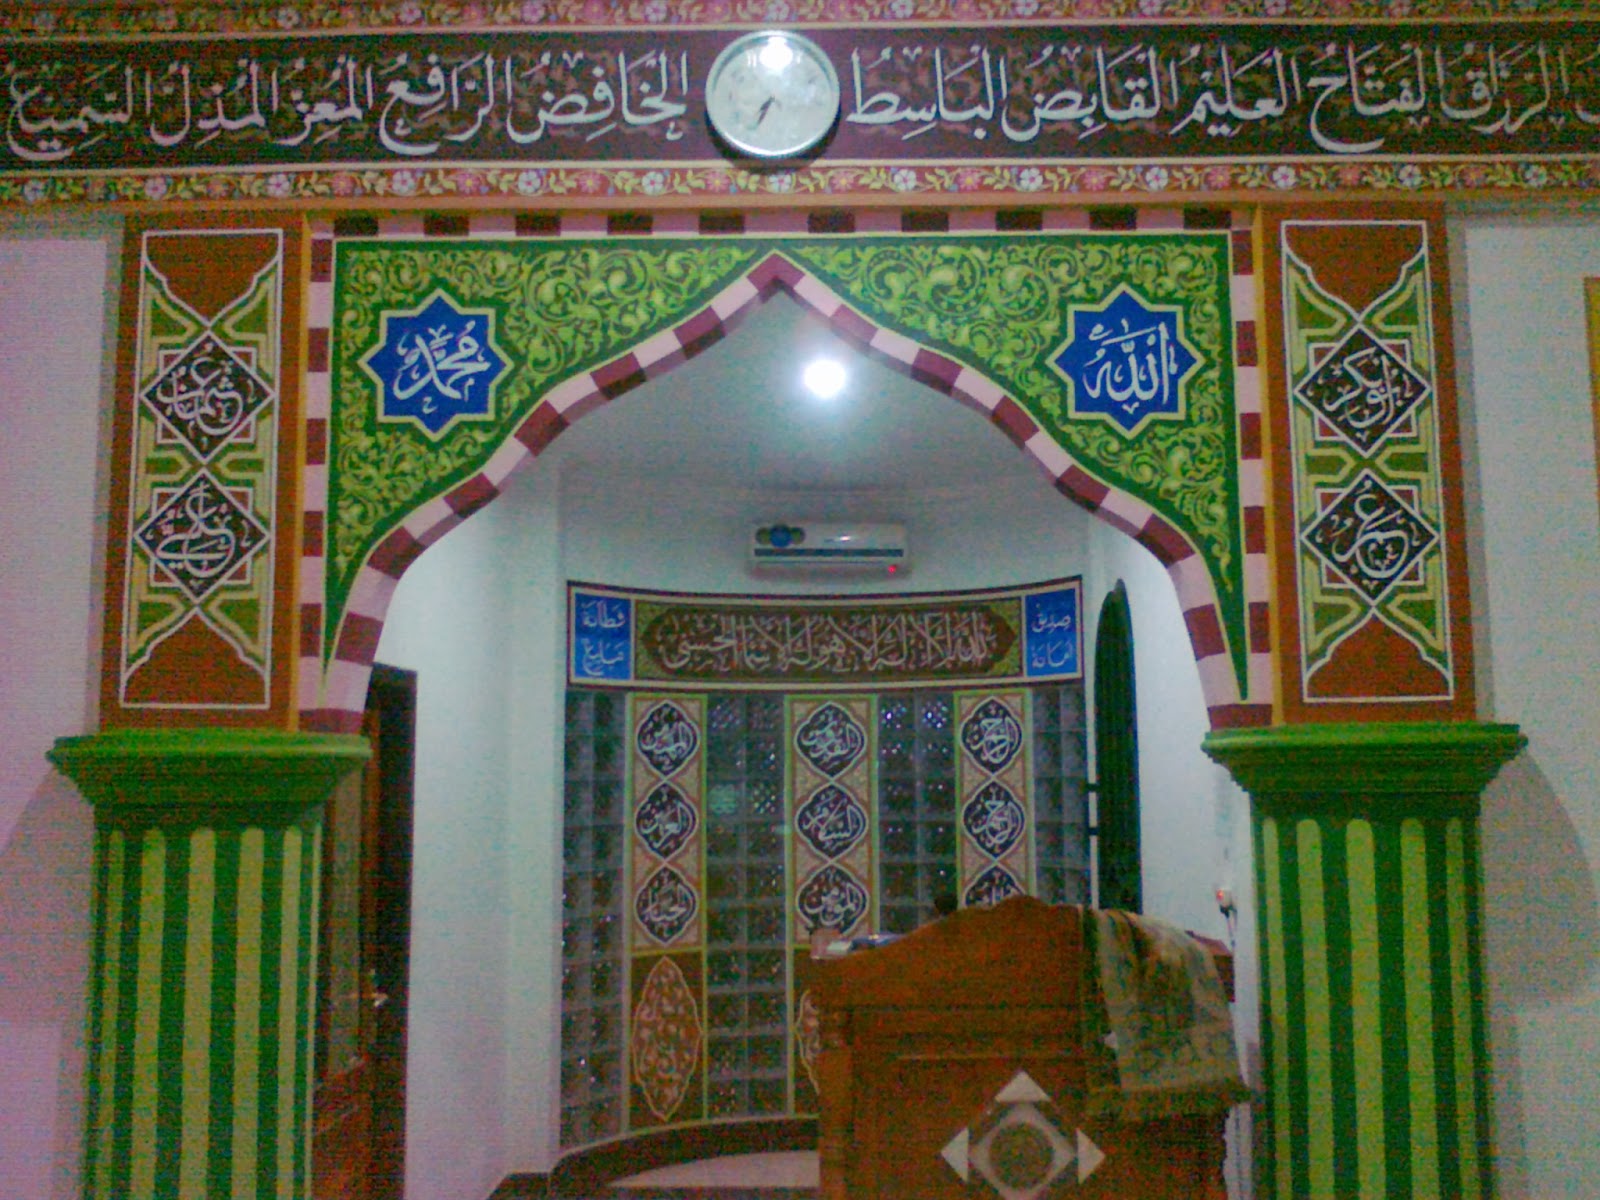 44 Gambar Kaligrafi Dinding  Masjid  Mushola Terbaik 